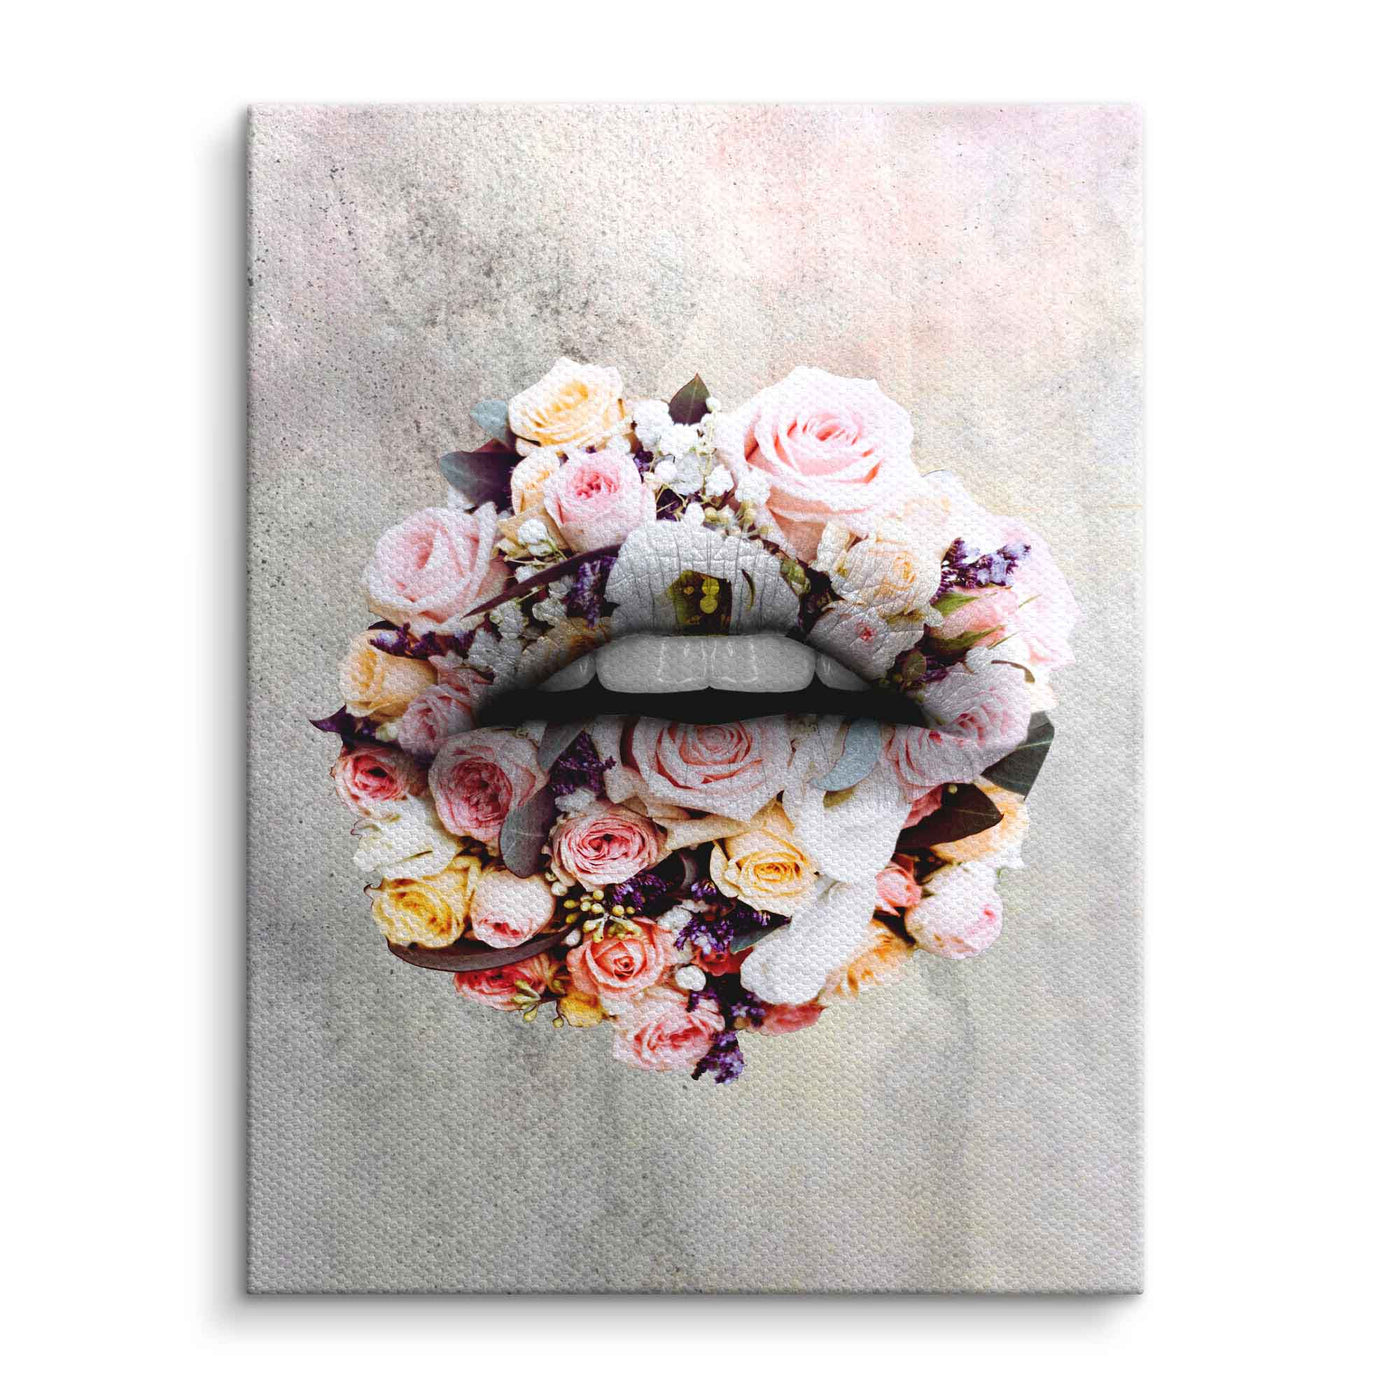 Flowers - Lips